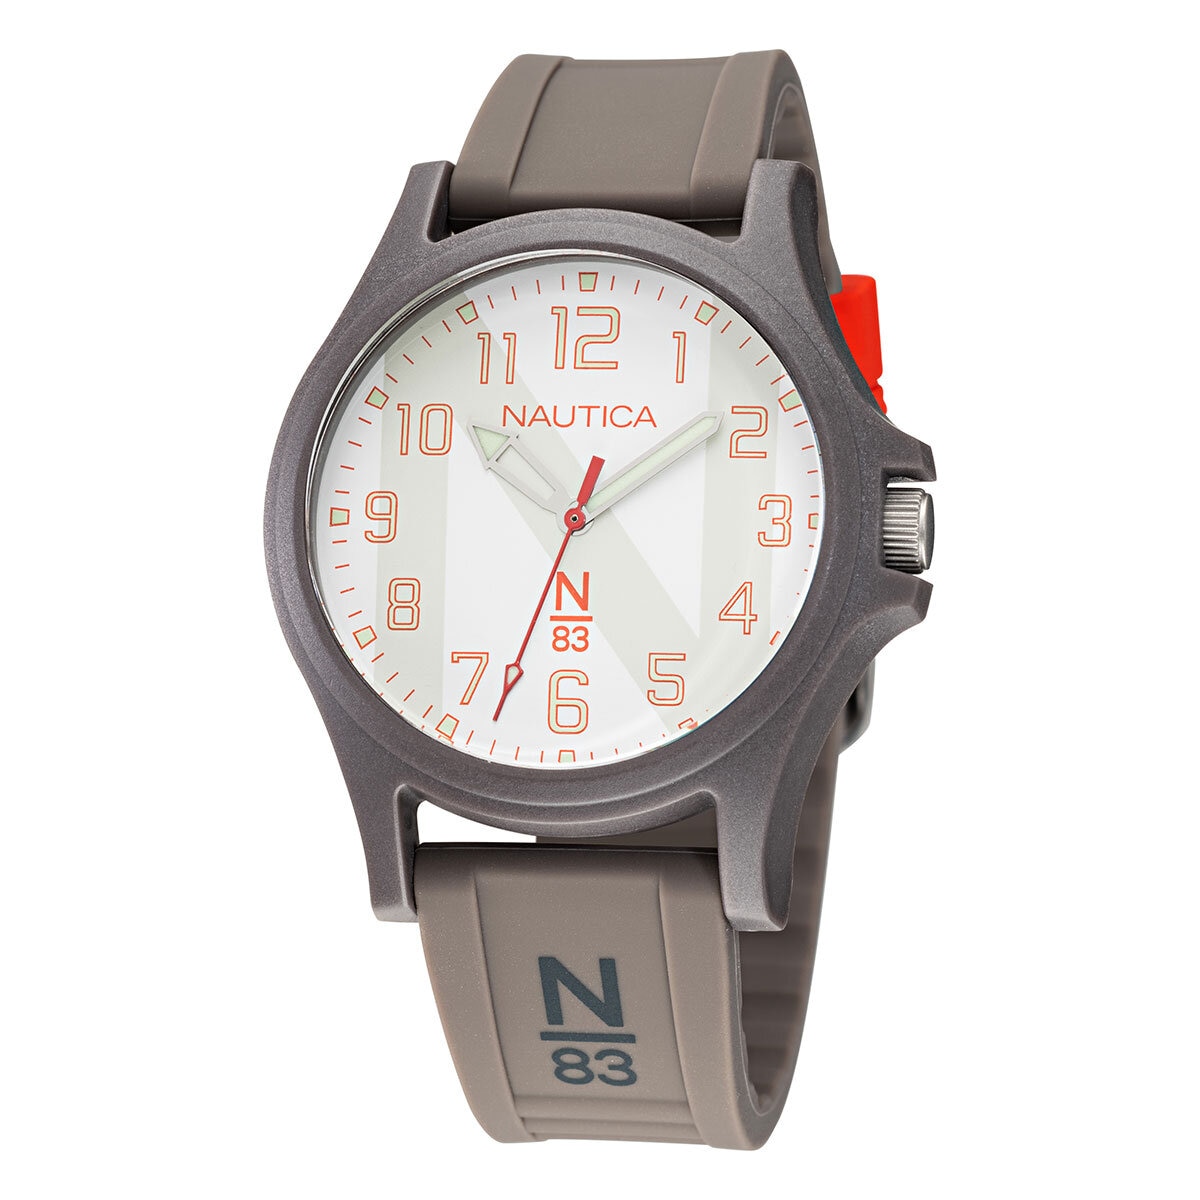  Nautica N83, Reloj para Caballero NAPJSS118 Java Sea 40mm